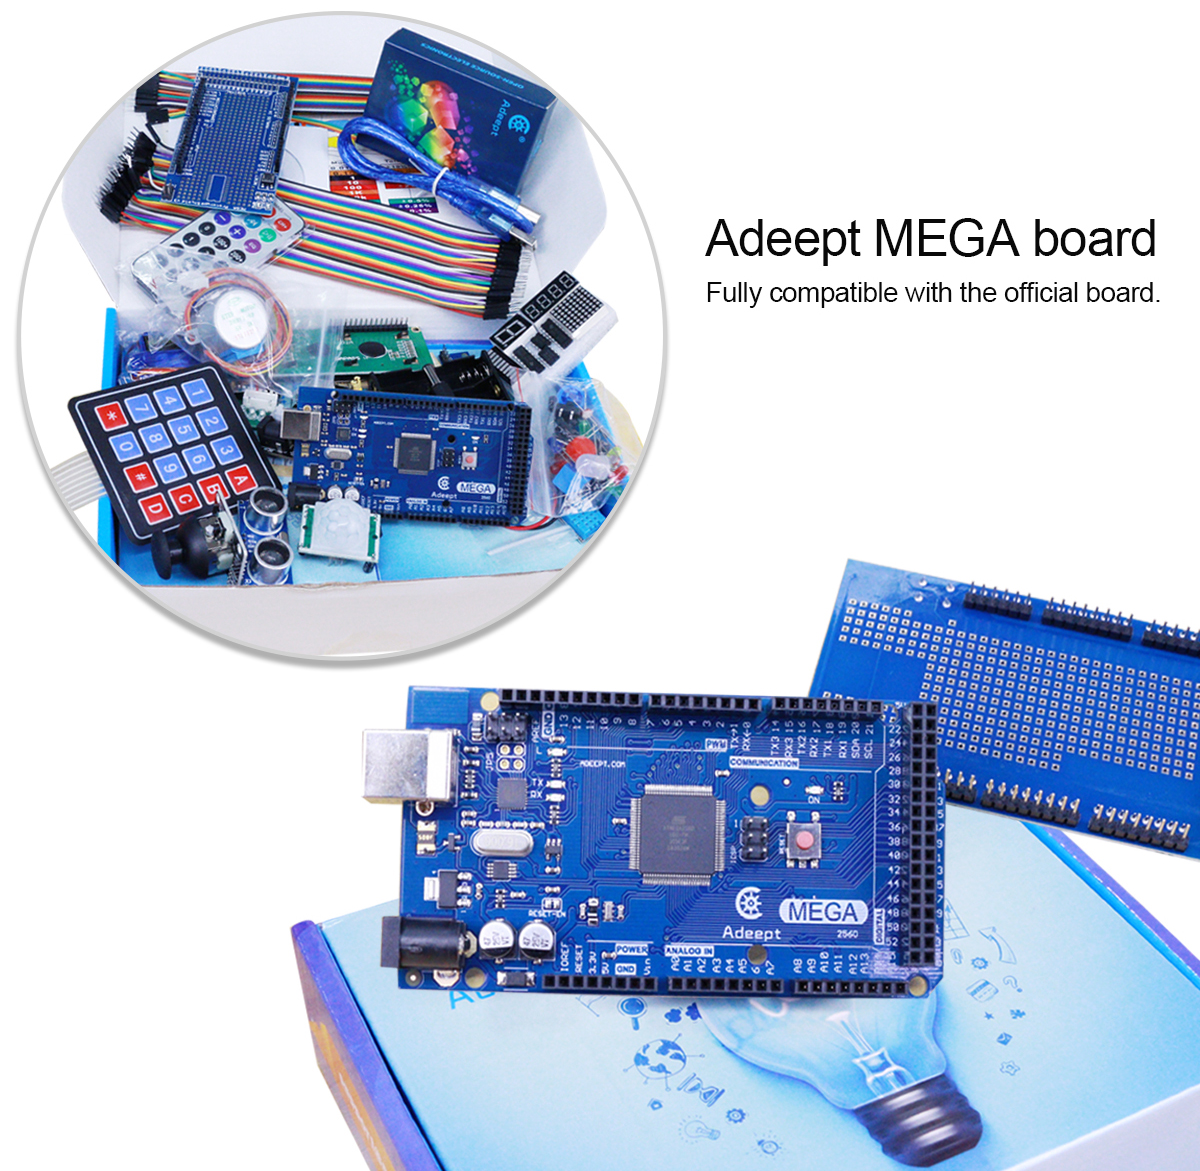 Adeept Mega2560 Ultimate Starter Kit - Click to Enlarge